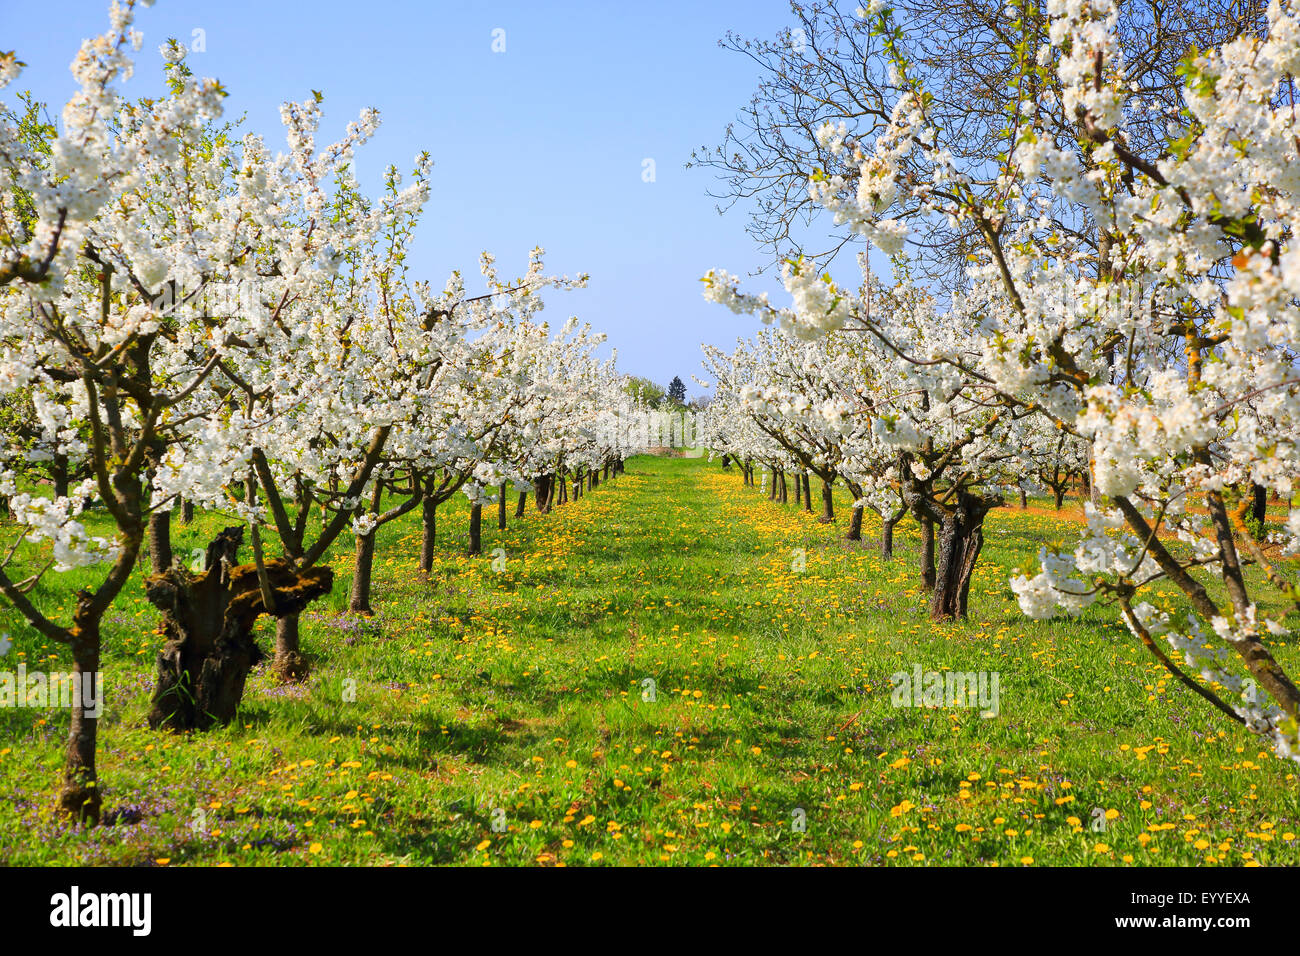 Cherry tree, Sweet cherry (Prunus avium), flowering cherry plantation, Germany Stock Photo